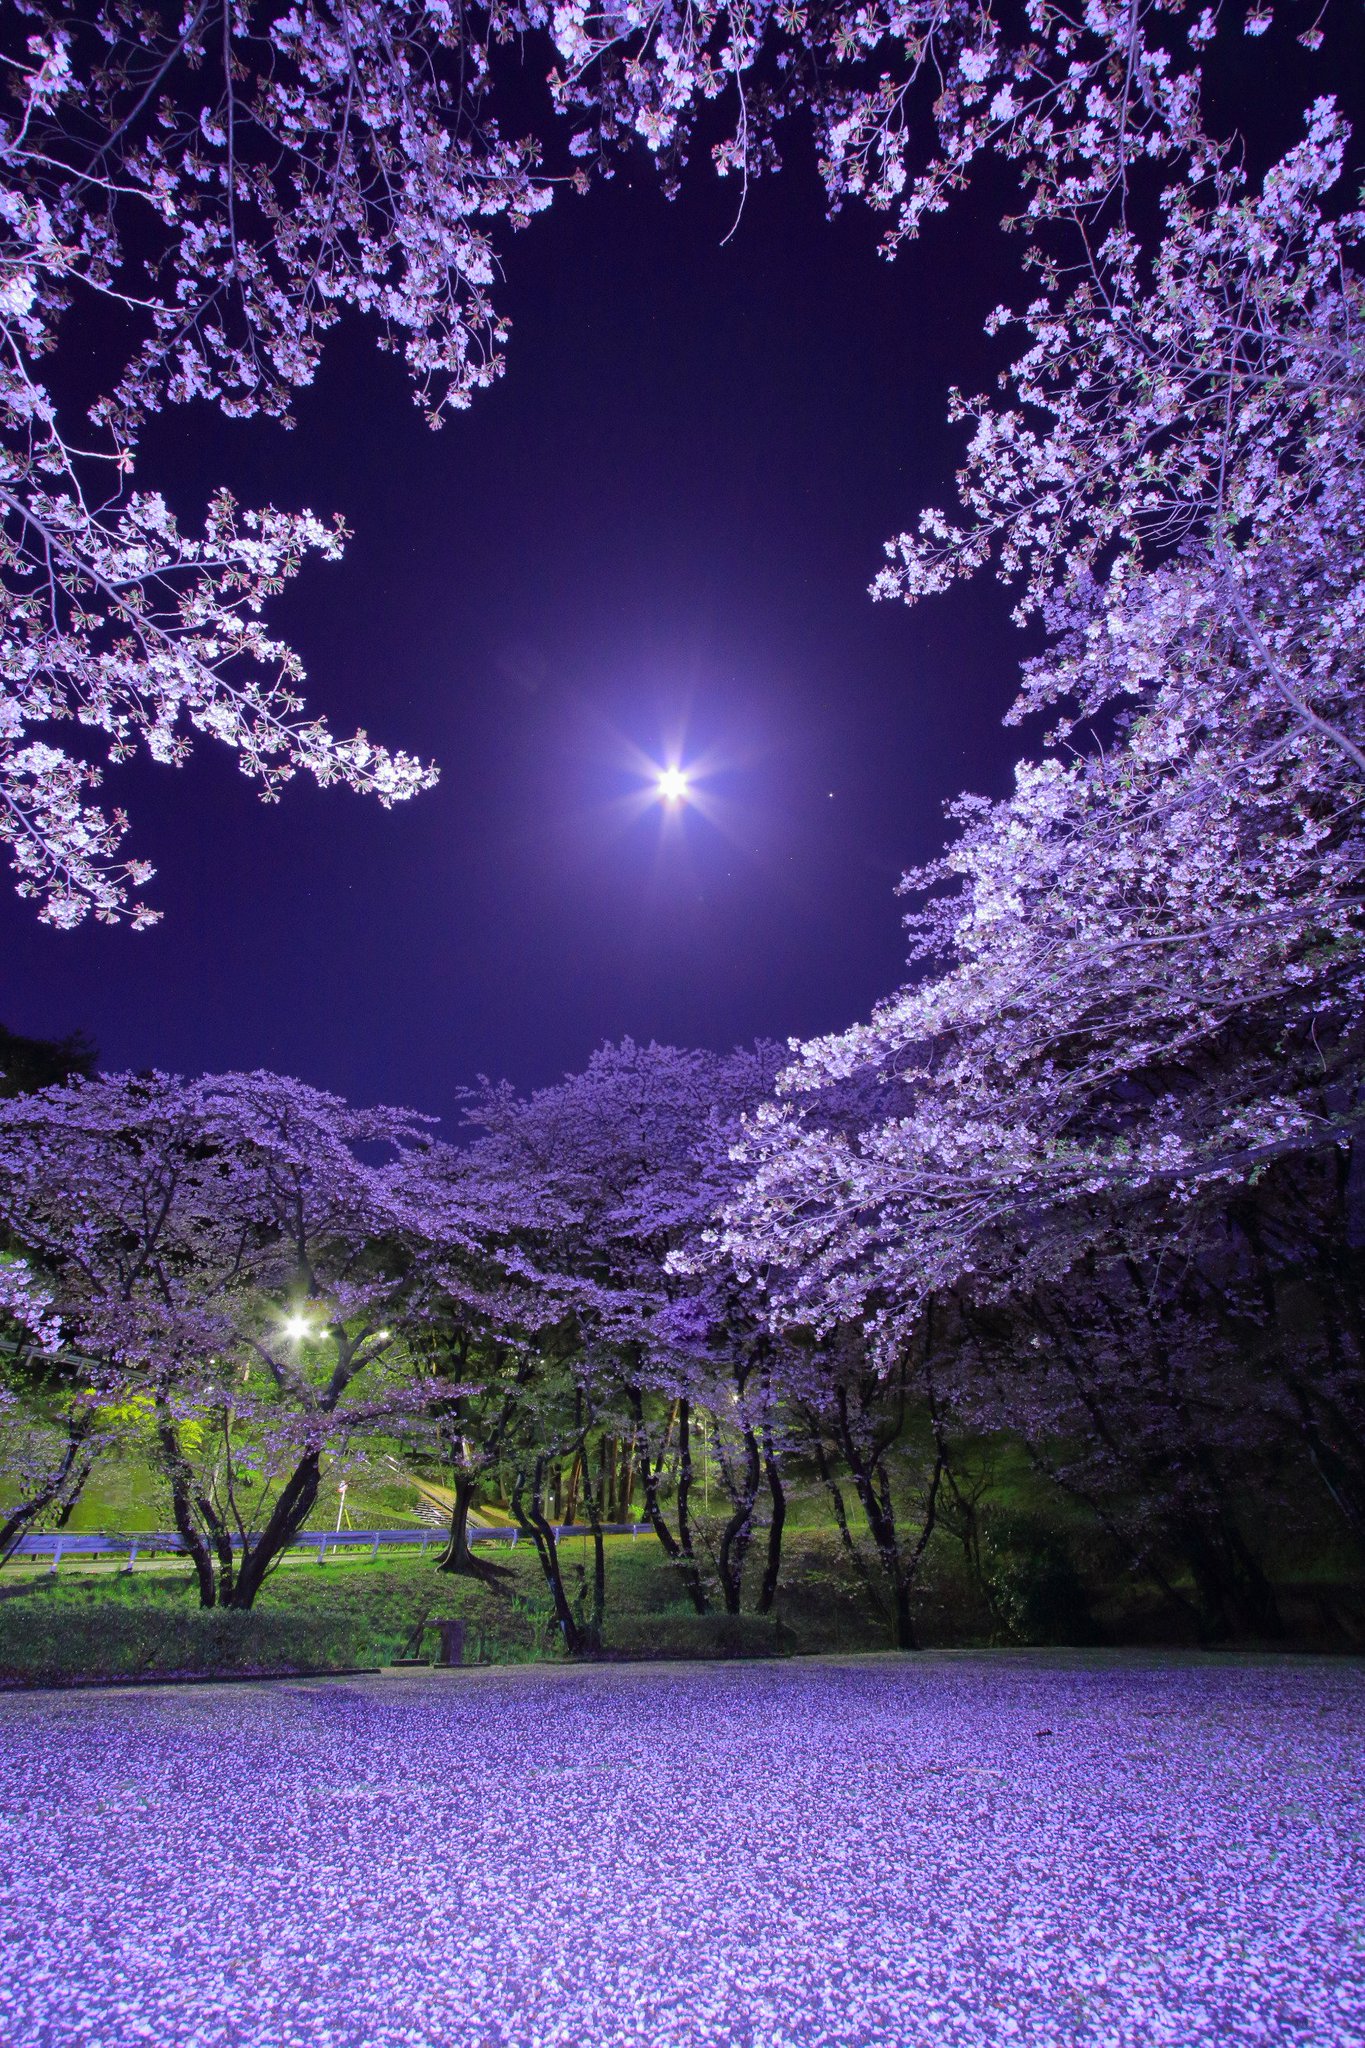 くまゆき 17 04 11 満月の夜の桜撮影 桜が散ってしまっても嘆くことは無いよ 花びらが散っても こんなにも美しい T Co Tgrfgvz9nt Twitter